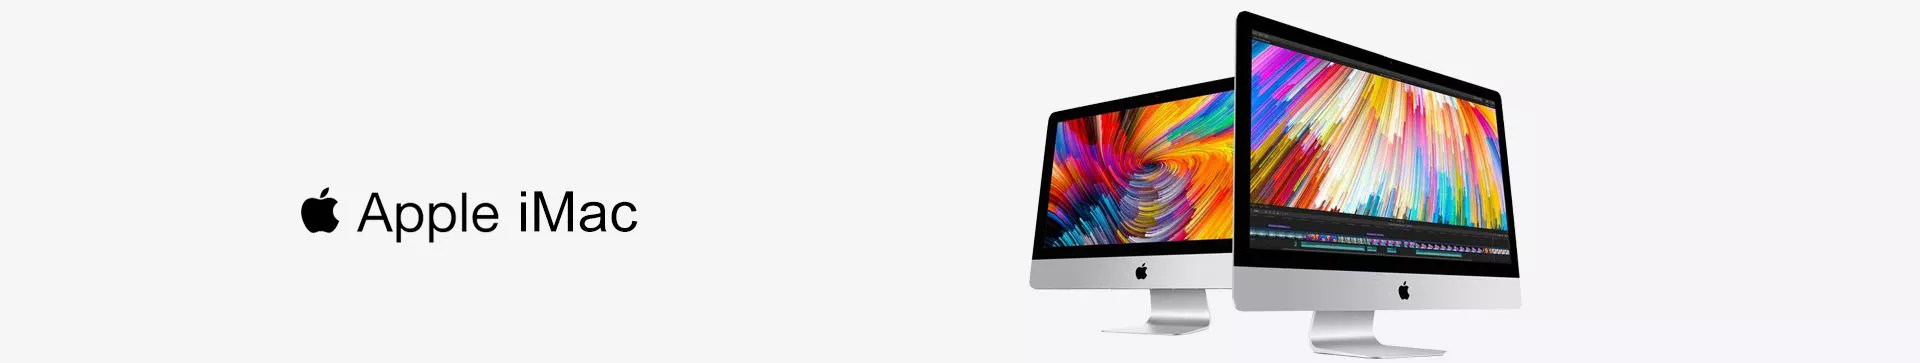 Apple Banner_iMac